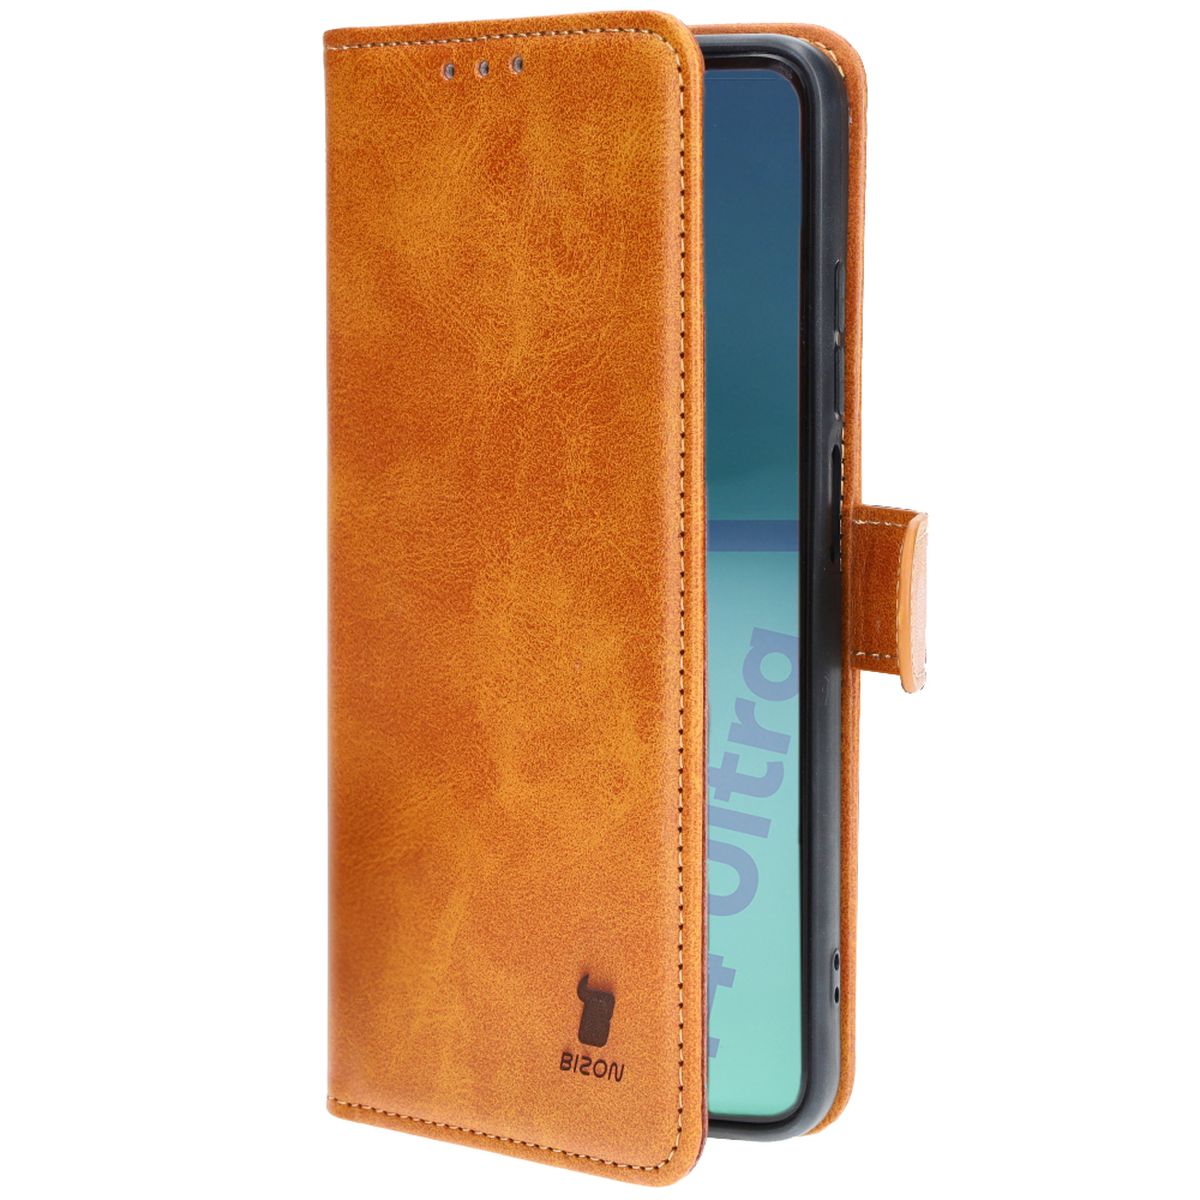 Schutzhülle für Xiaomi 14 Ultra, Bizon Case Pocket, Braun